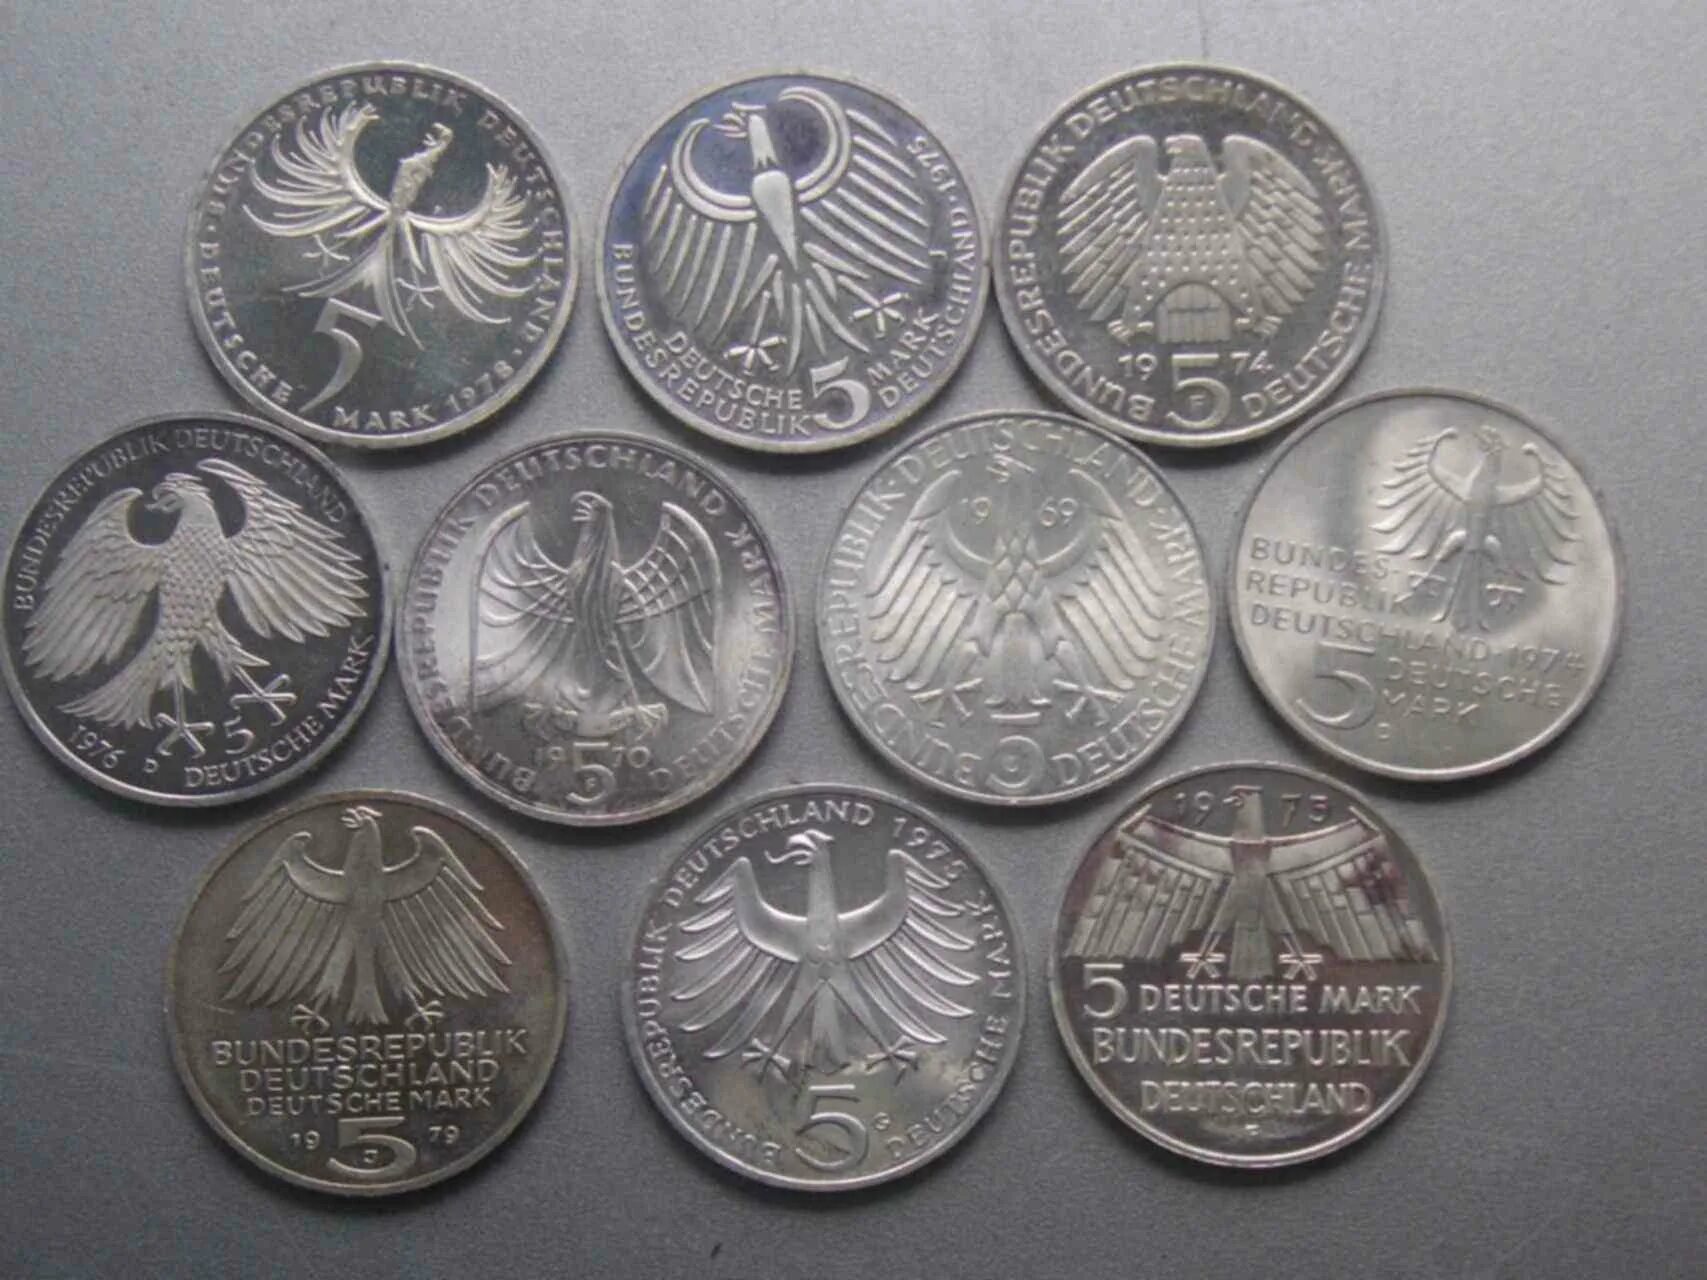 Серебряные монеты Германии. Монеты Германии серебро. Старинные немецкие серебряные монеты. Немецкие мундиры серебро монеты. Авито монета серебро